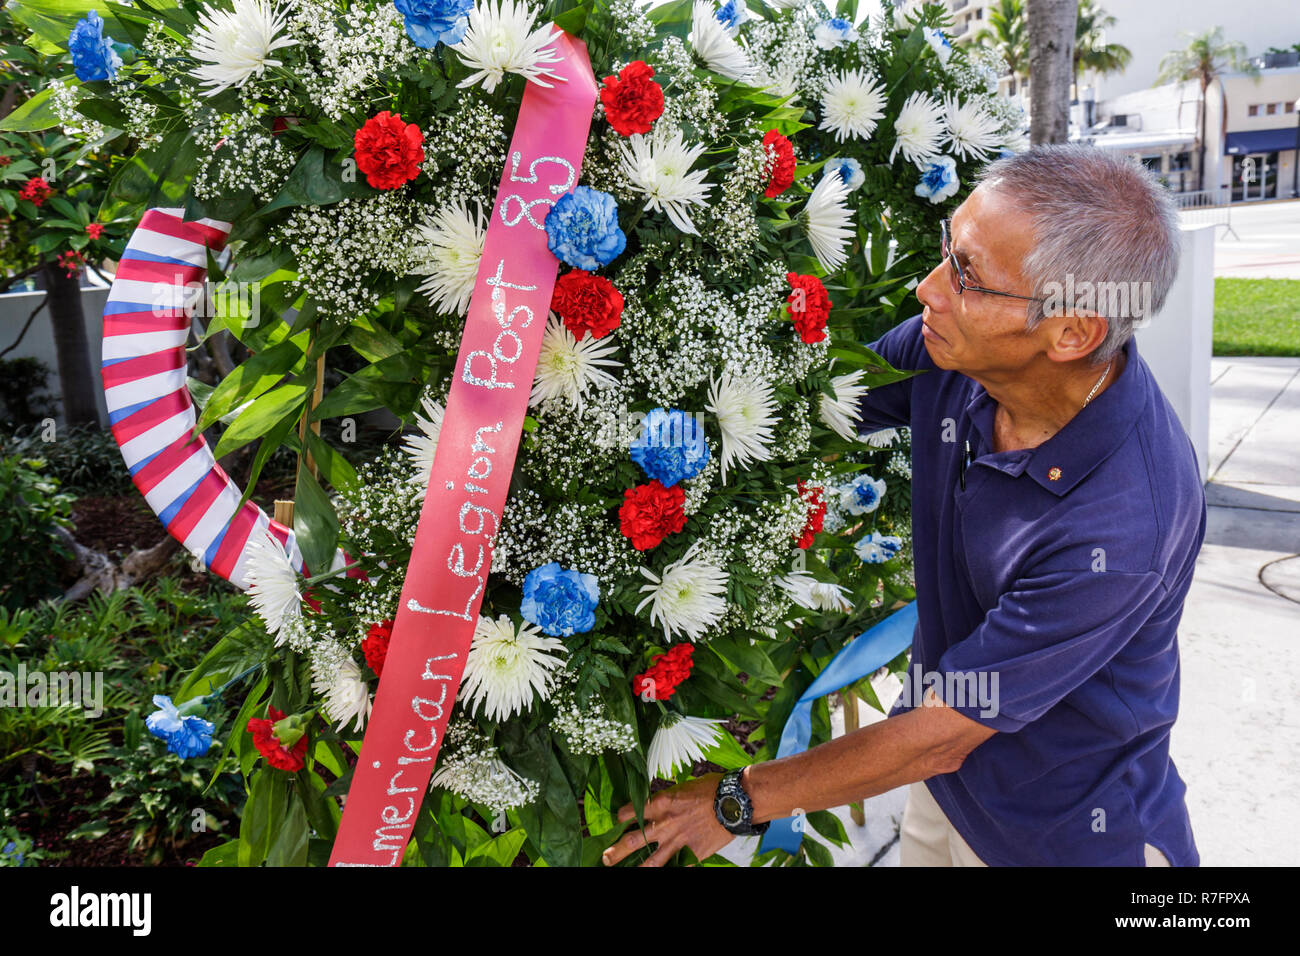 Miami Beach Florida, Estación de Policía, Ceremonia del Día de los Caídos, vacaciones federales, honor, conmemorar a los soldados caídos, muertos, hombres asiáticos hombres adultos adultos, guerra ve Foto de stock